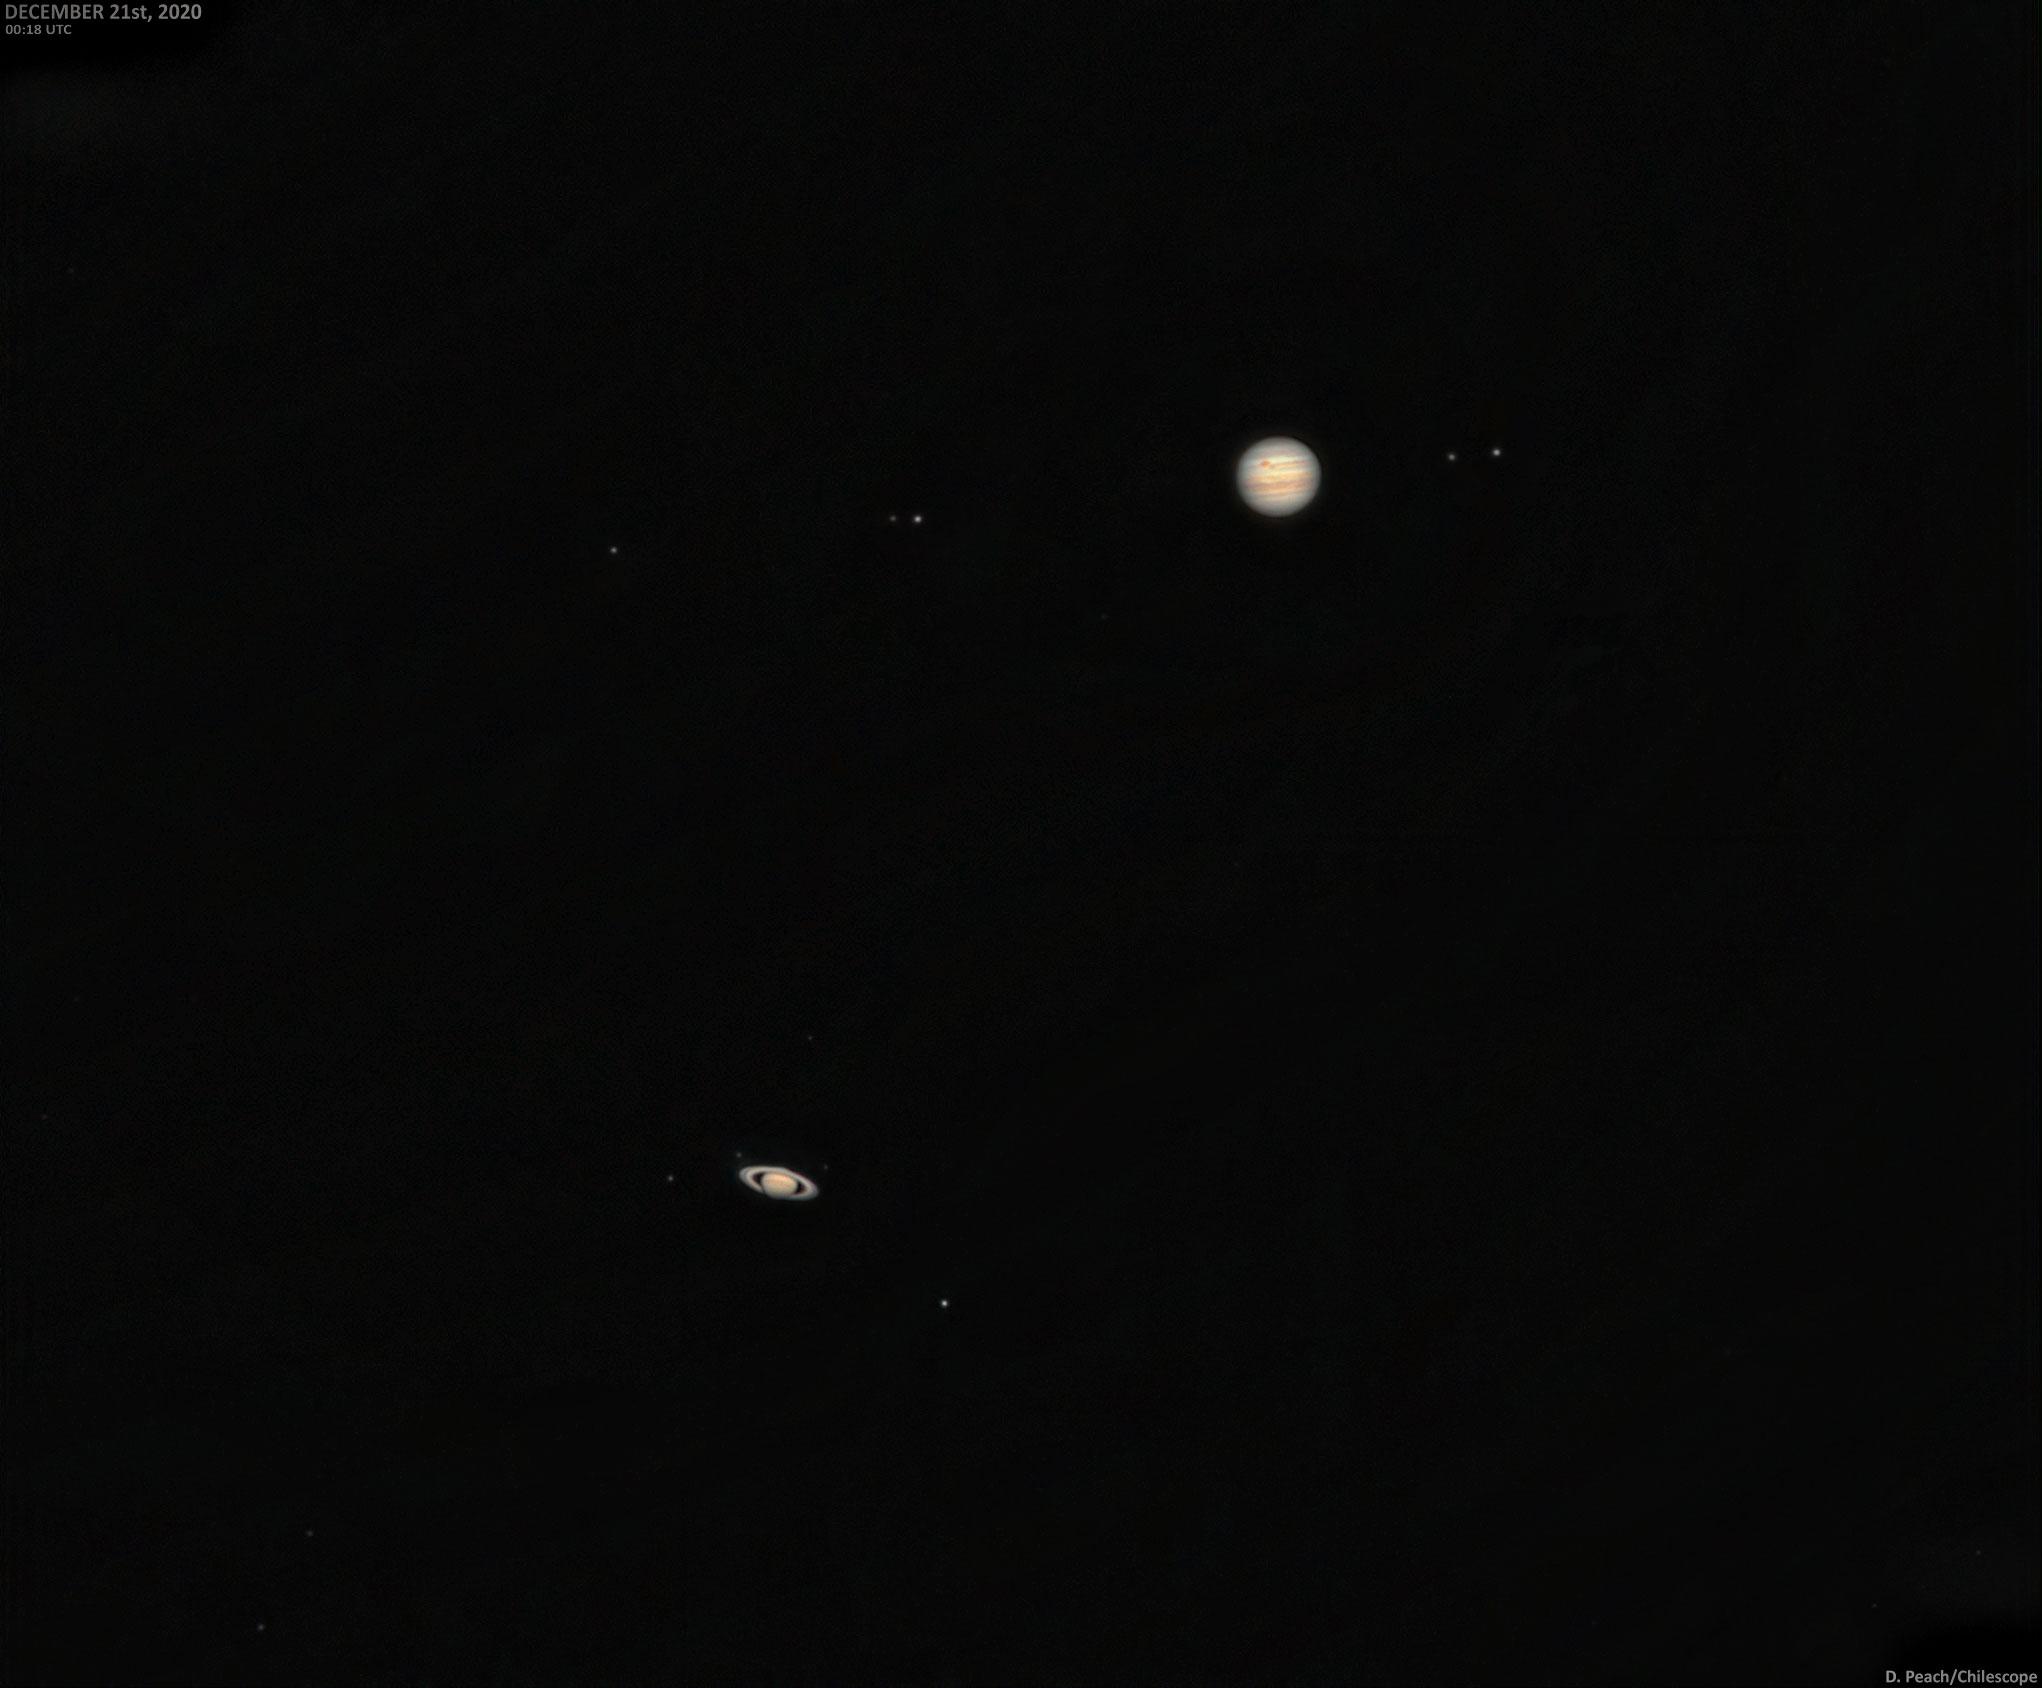 صورة مركبة تظهر المشتري وأقماره الأربعة الكبار كاليستو وغانيميد وآيو وأوروبا، إضافة إلى زحل وحلقاته وقمره الأكبر تيتان. تظهر كذلك بقعة المشتري الحمراء العظيمة.